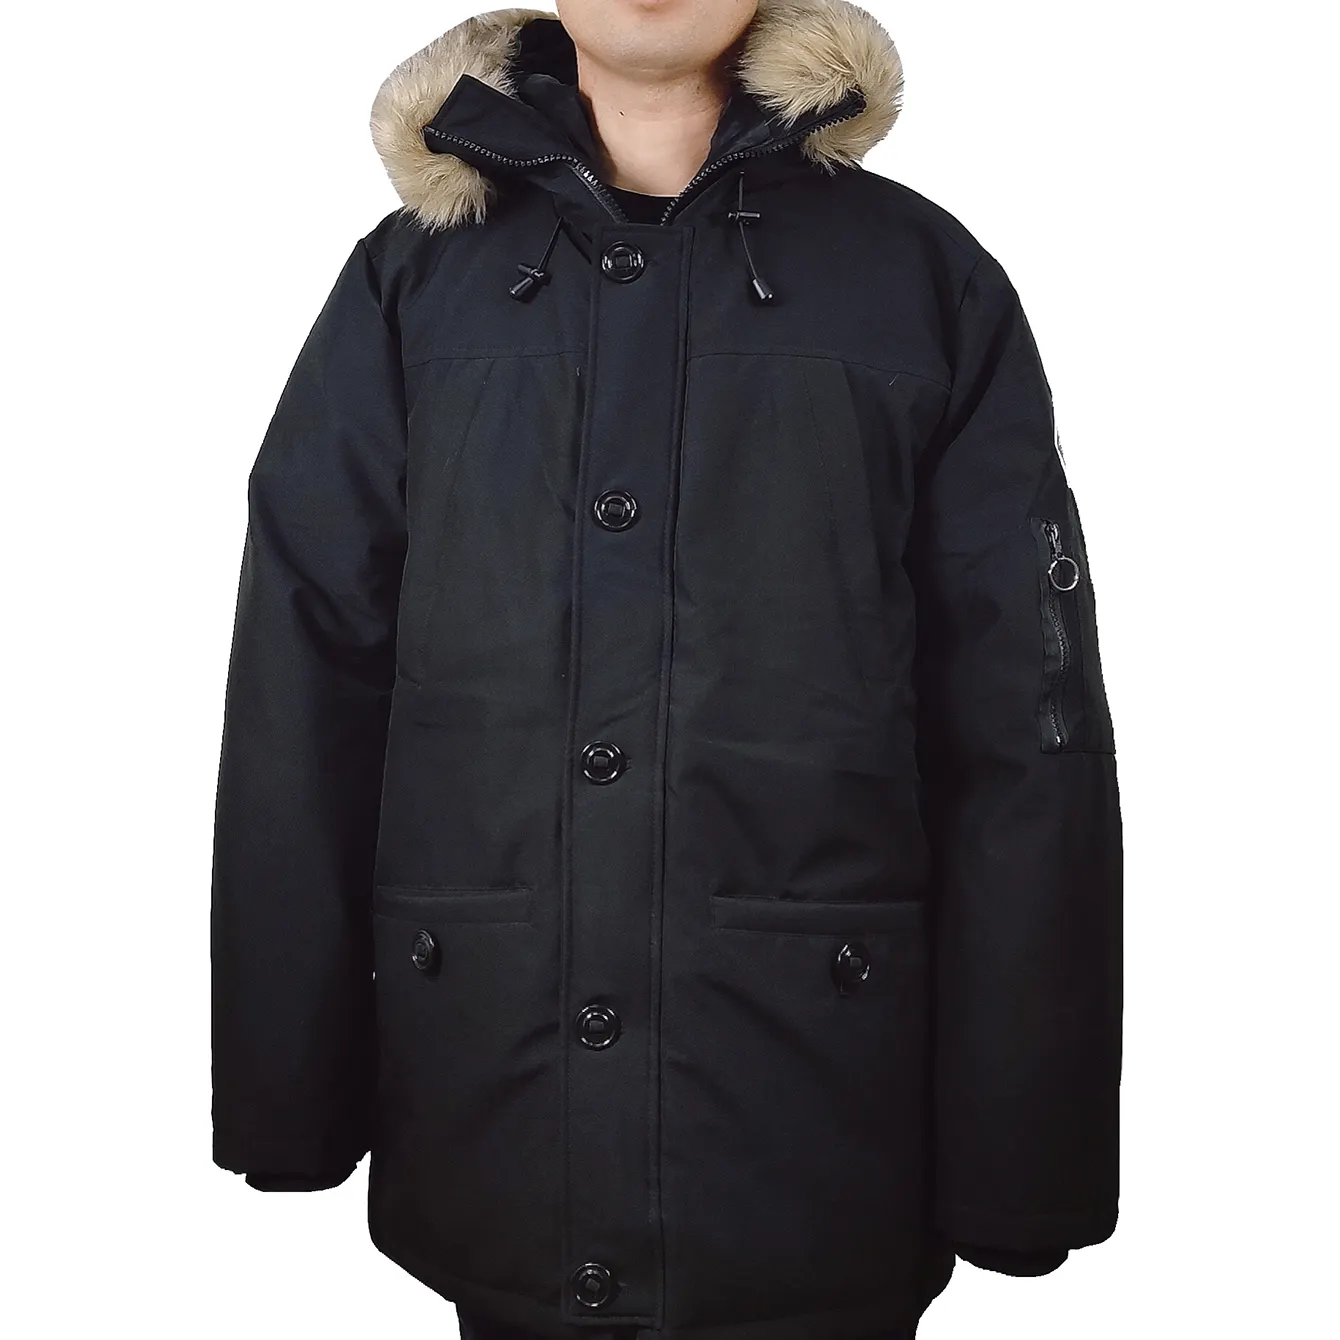 Kürk Hood toptan erkek yastıklı Parka ceket kapşonlu uzun sıcak tutan kaban kış Parka ceket erkekler kış için